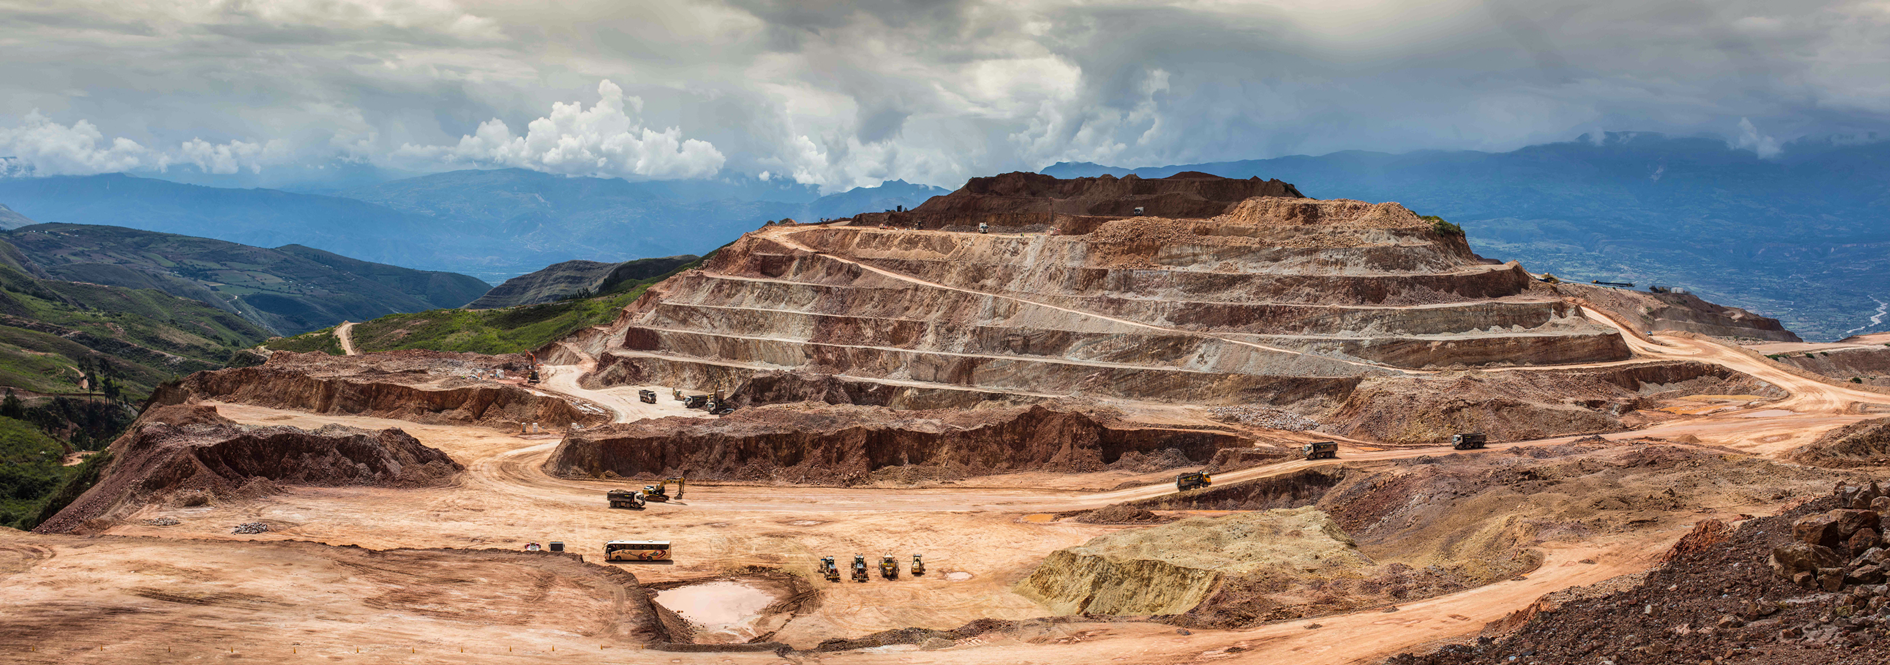 LSM-Mine in Peru